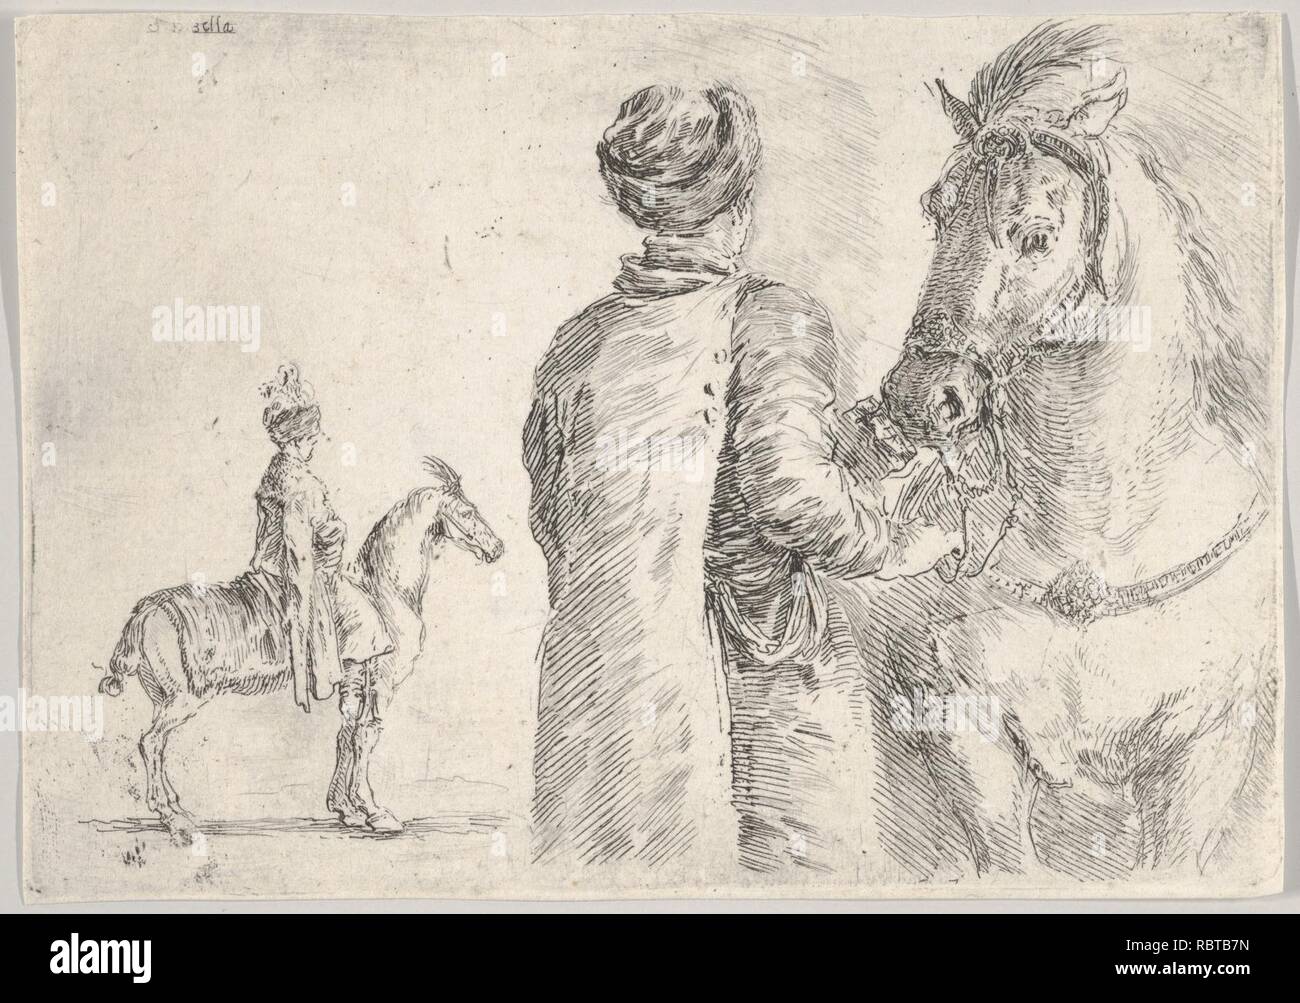 Un service voiturier, vu de dos, tenant la bride d'un cheval à droite, un cavalier polonais de profil vers la gauche dans l'arrière-plan Banque D'Images